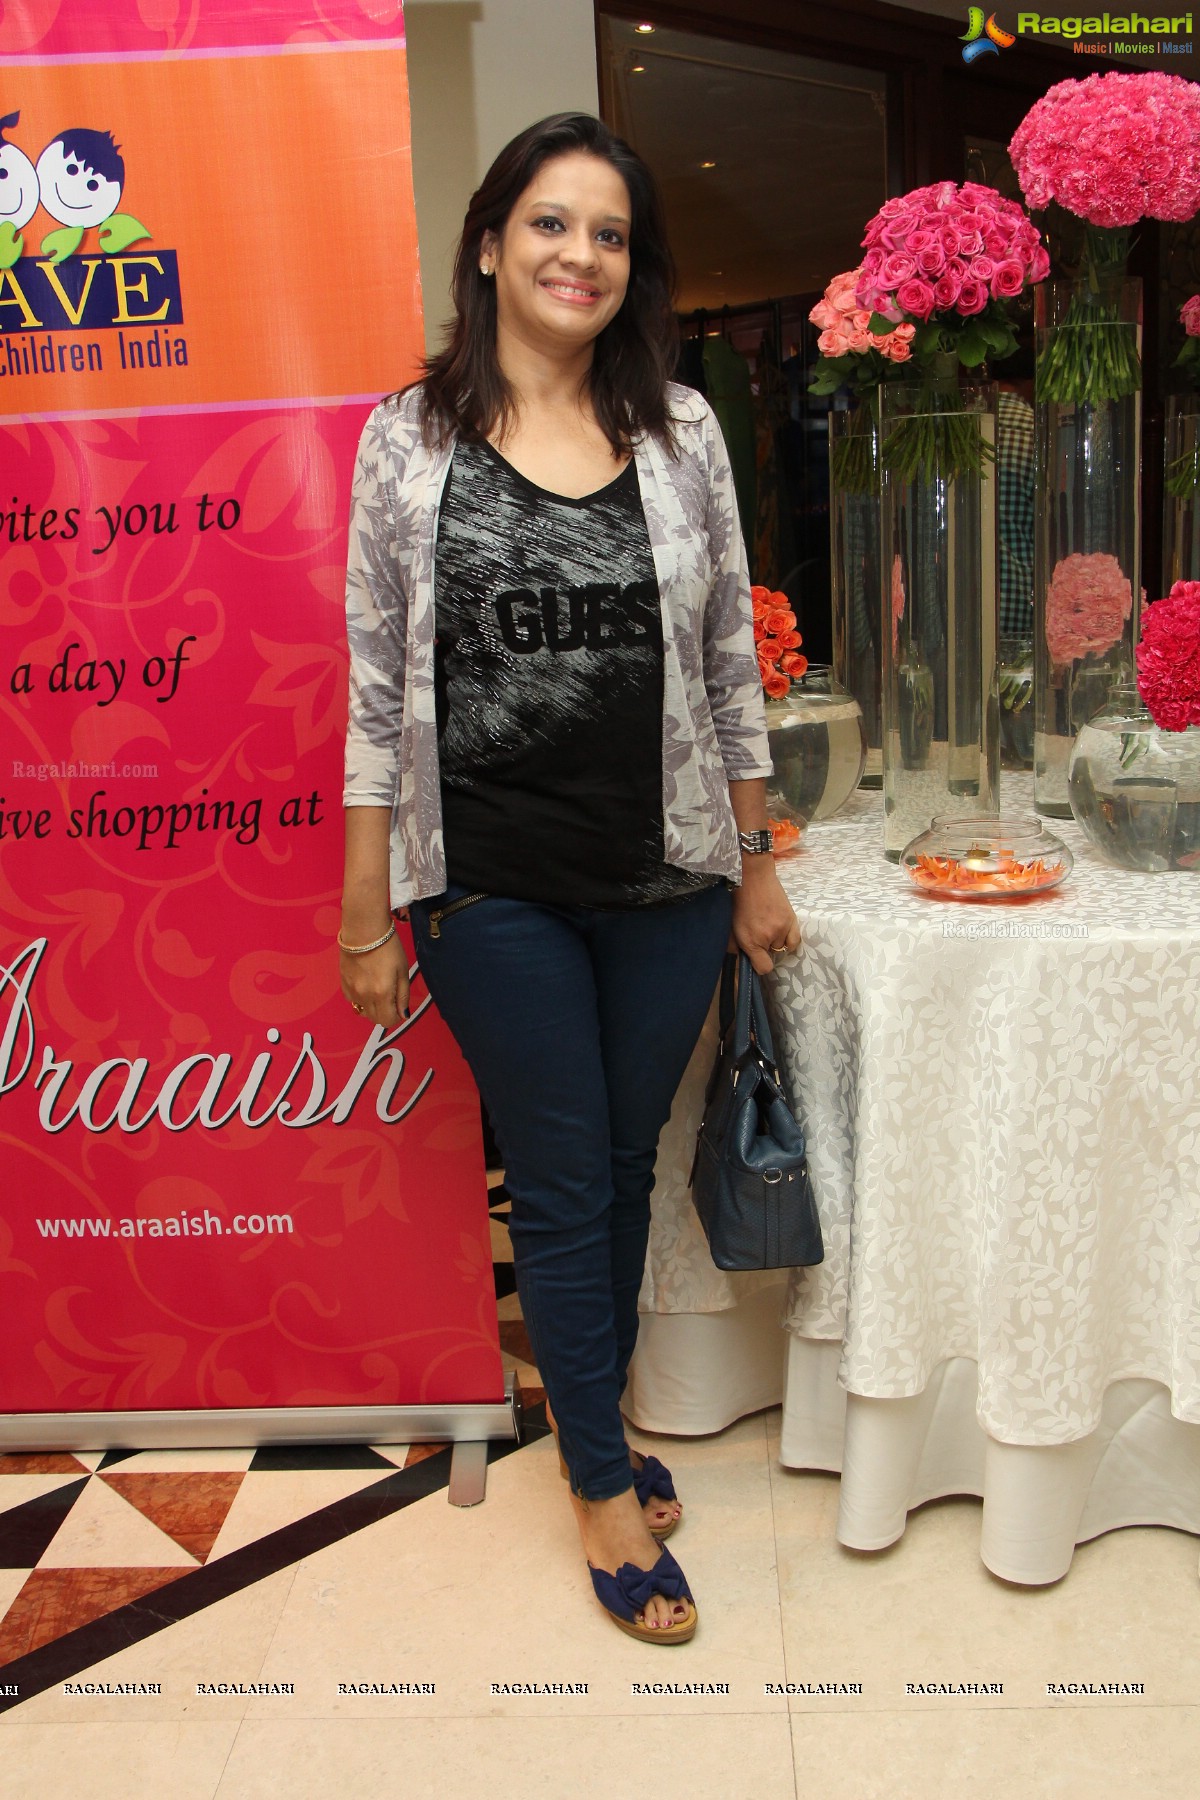 Araaish Exhibition at Taj Krishna, Hyderabad